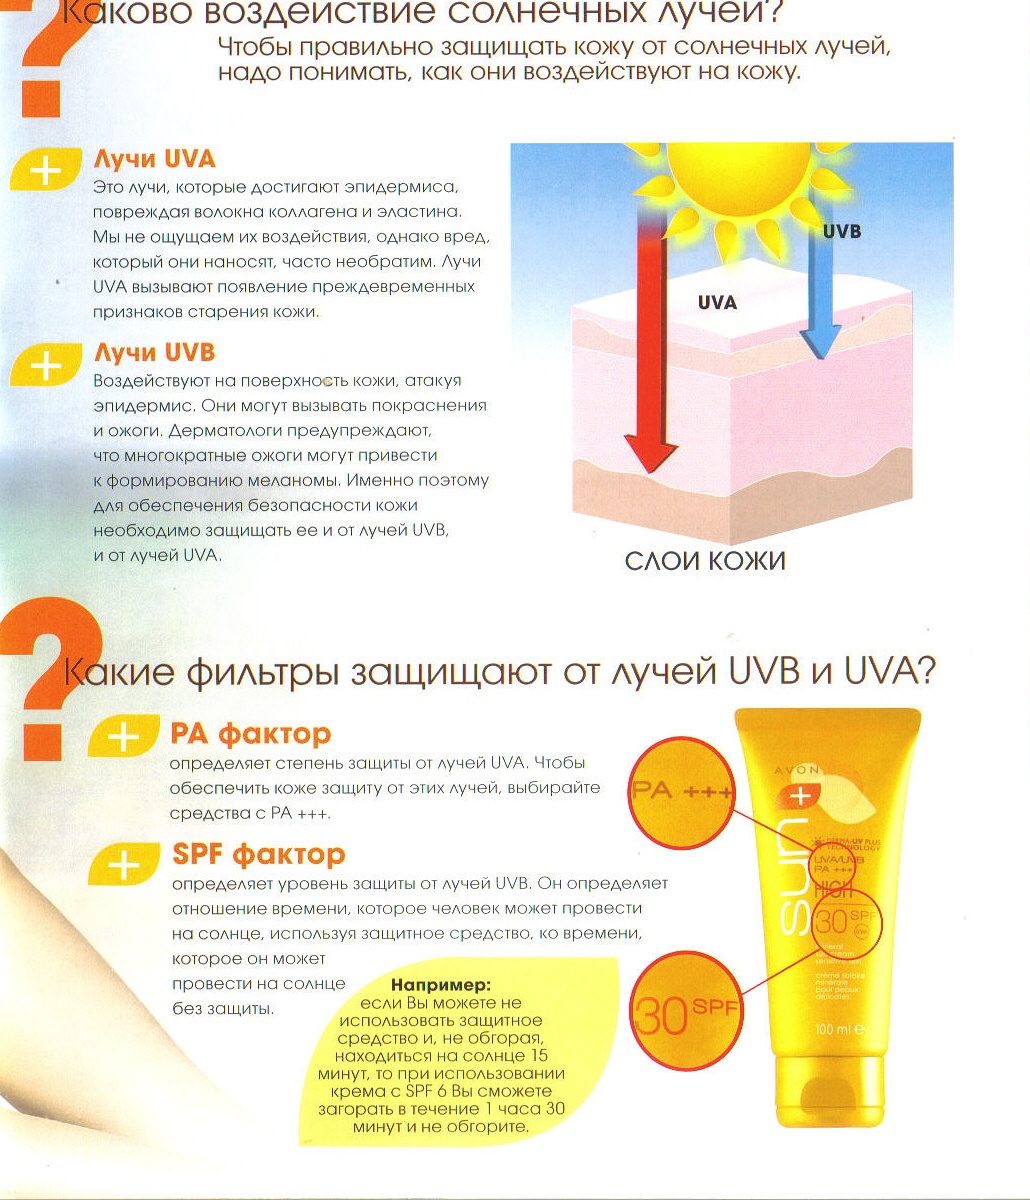 Радиация кожи. Влияние солнечных лучей на кожу. Солнечное излучение и влияние на кожу. Защита от солнечных лучей. Воздействие солнечных лучей на кожу человека.